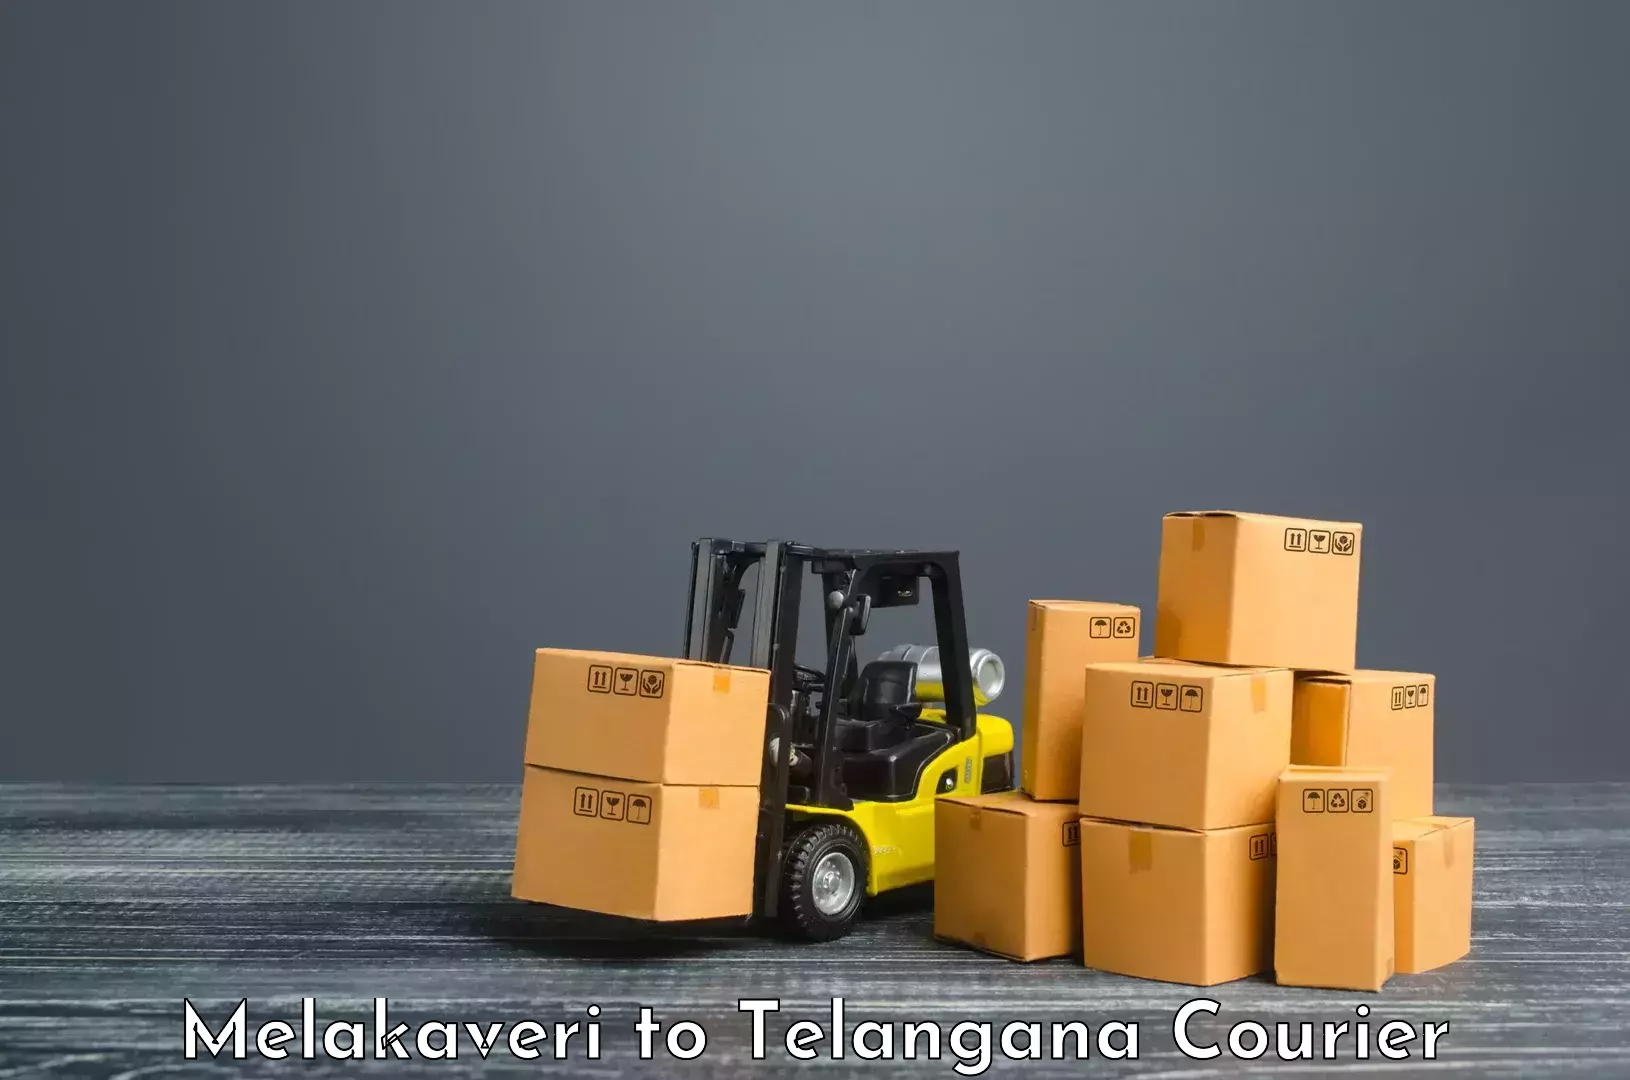 Global parcel delivery in Melakaveri to Vemulawada